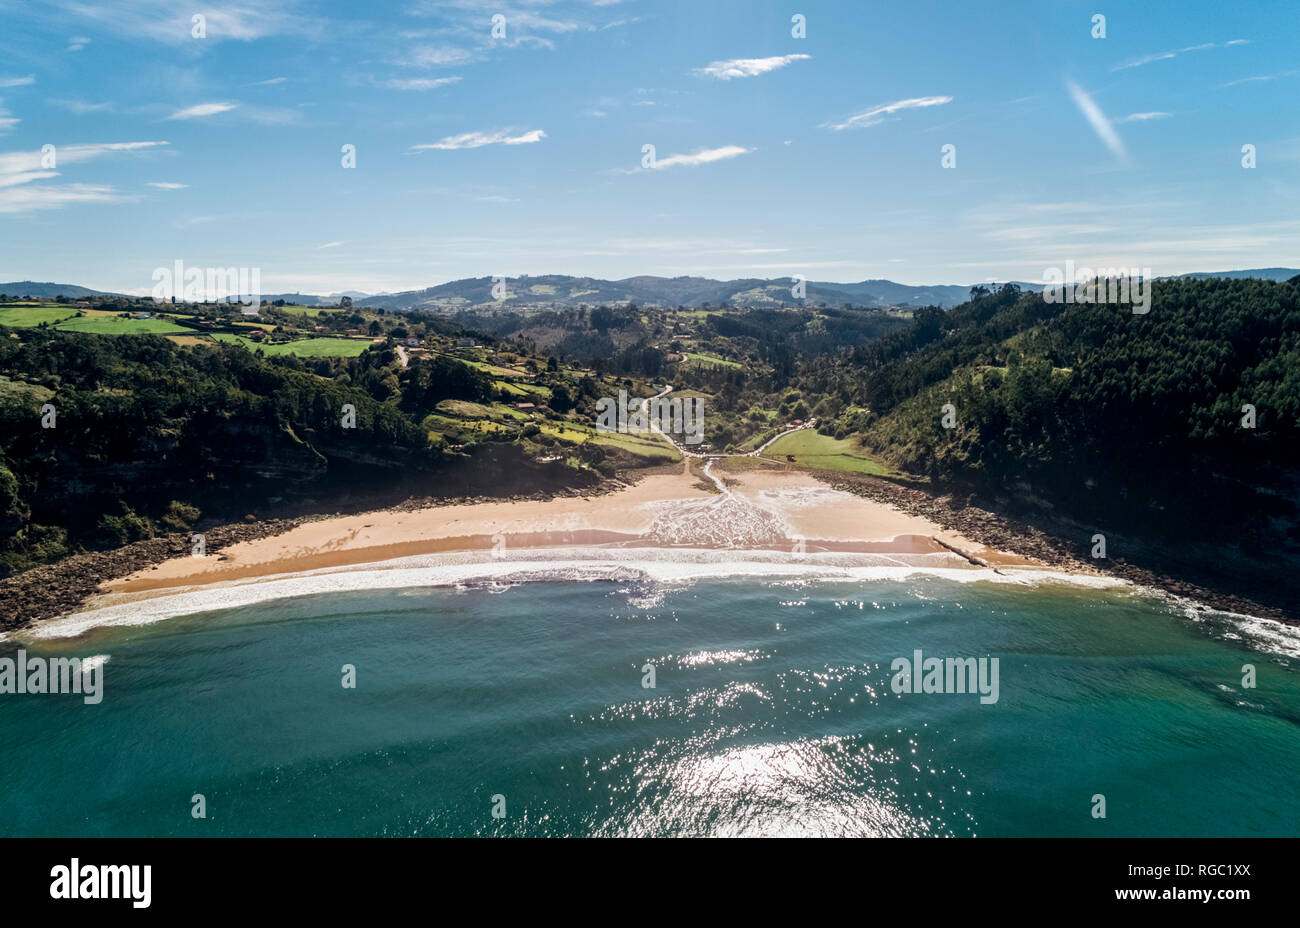 Spagna, Asturias, veduta aerea della spiaggia Foto Stock